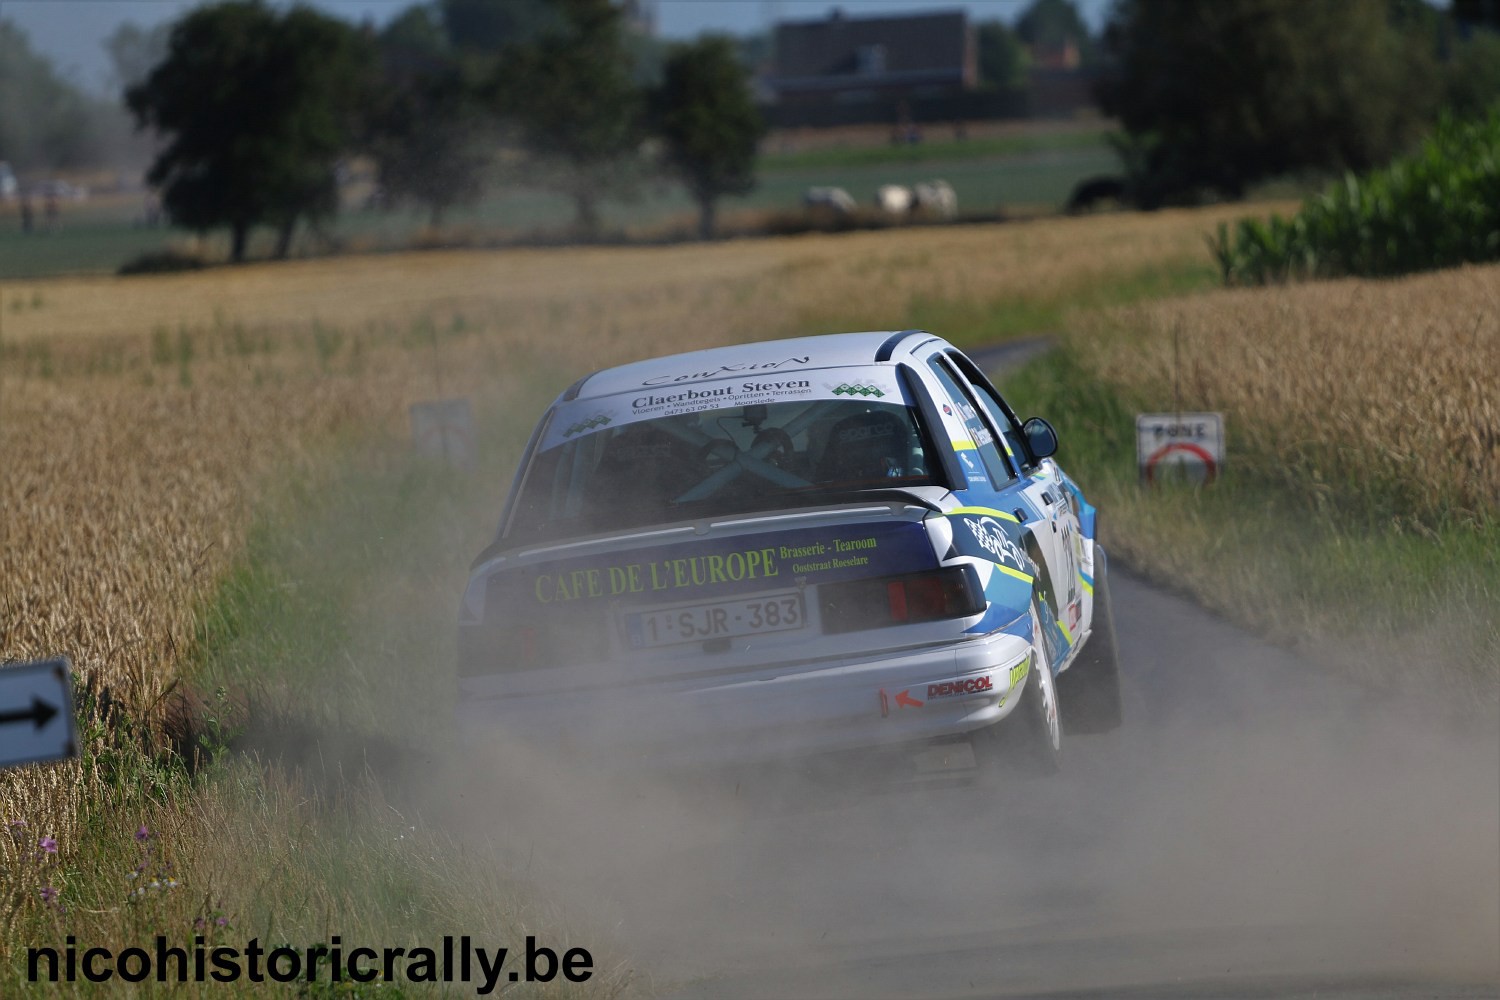 Wedstrijdverslag Nick Toorre in de TBR Short Rally: Een mooi duel en tevreden met onze 4de plaats !